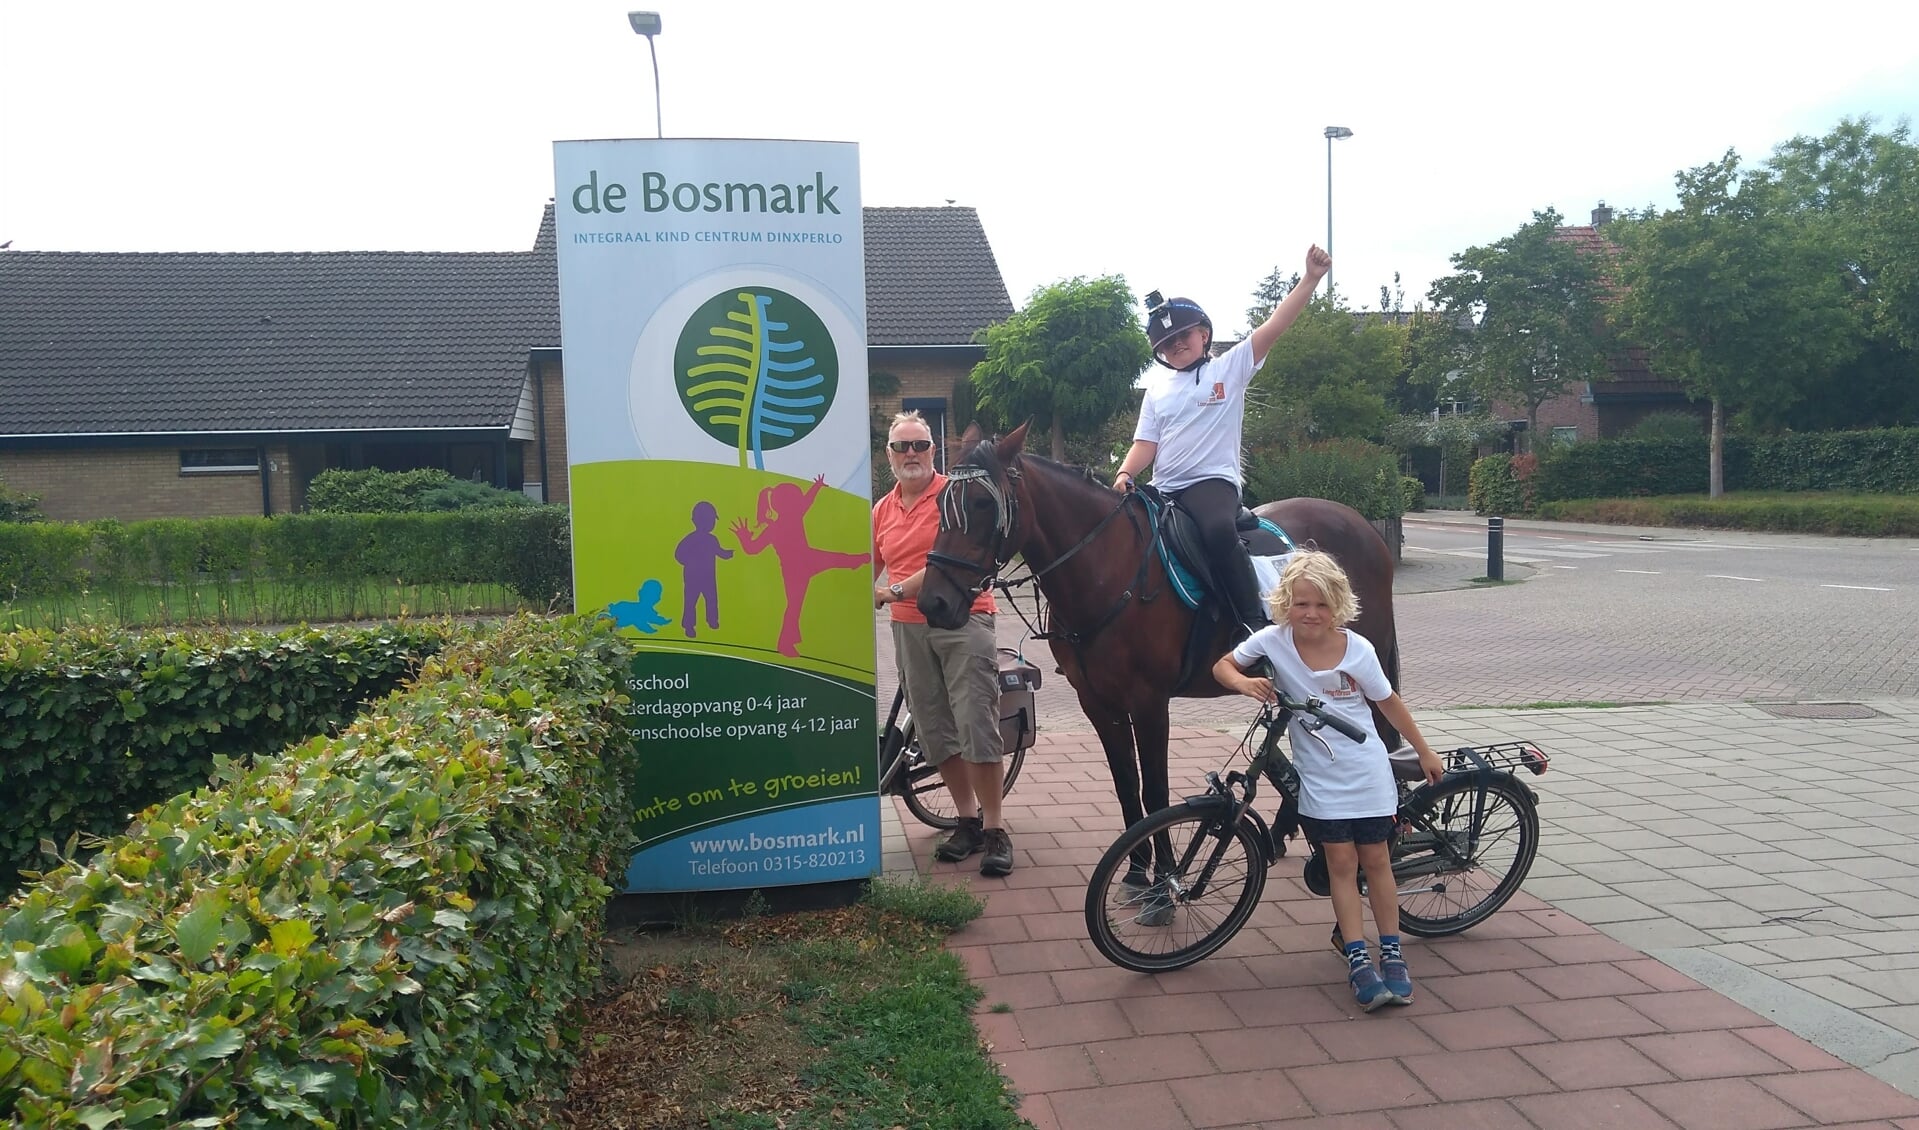 Lotteke en Laila bij De Bosmark. Foto: eigen foto